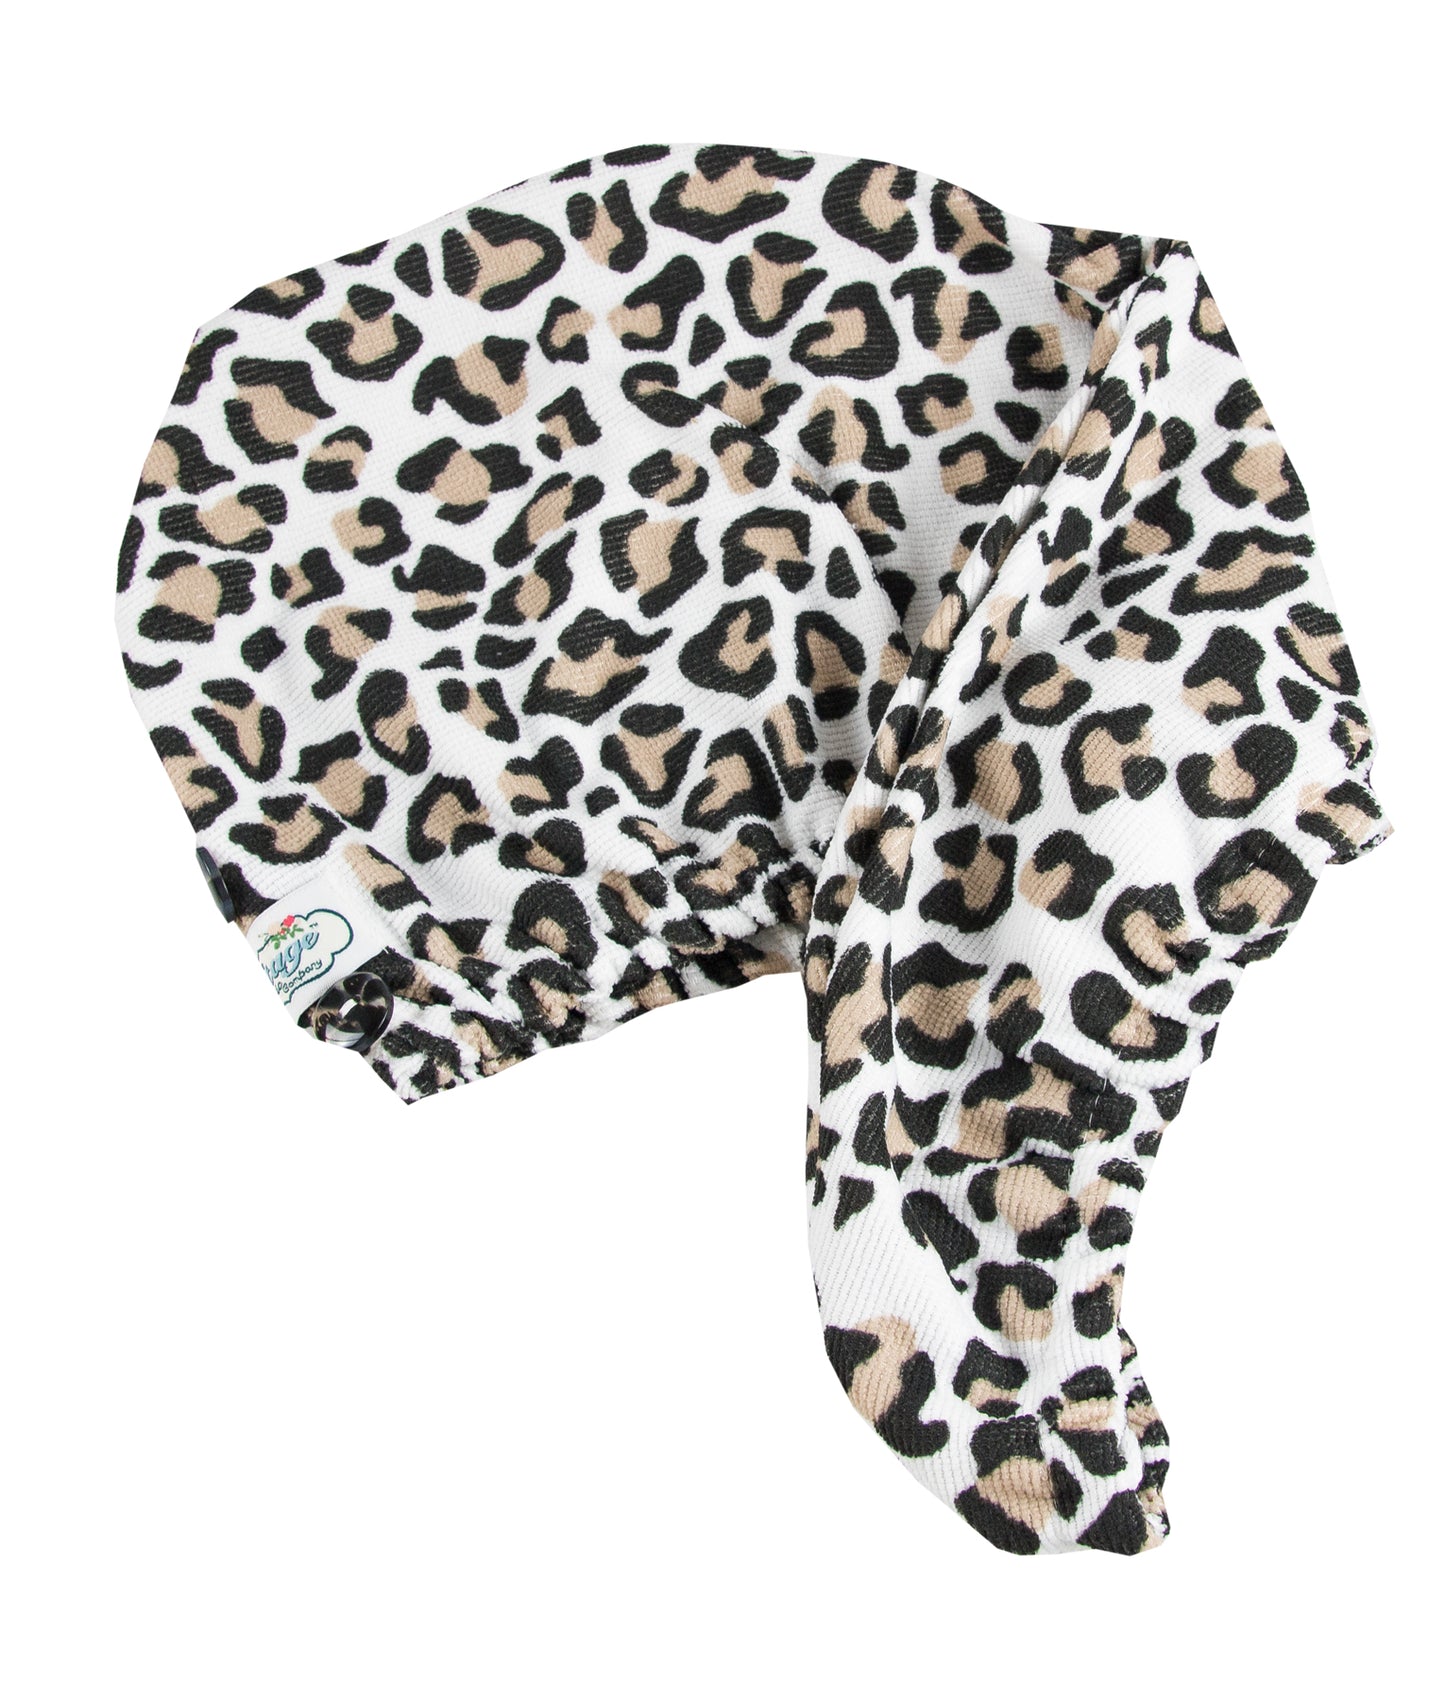 Hair Turban - Leopard Print